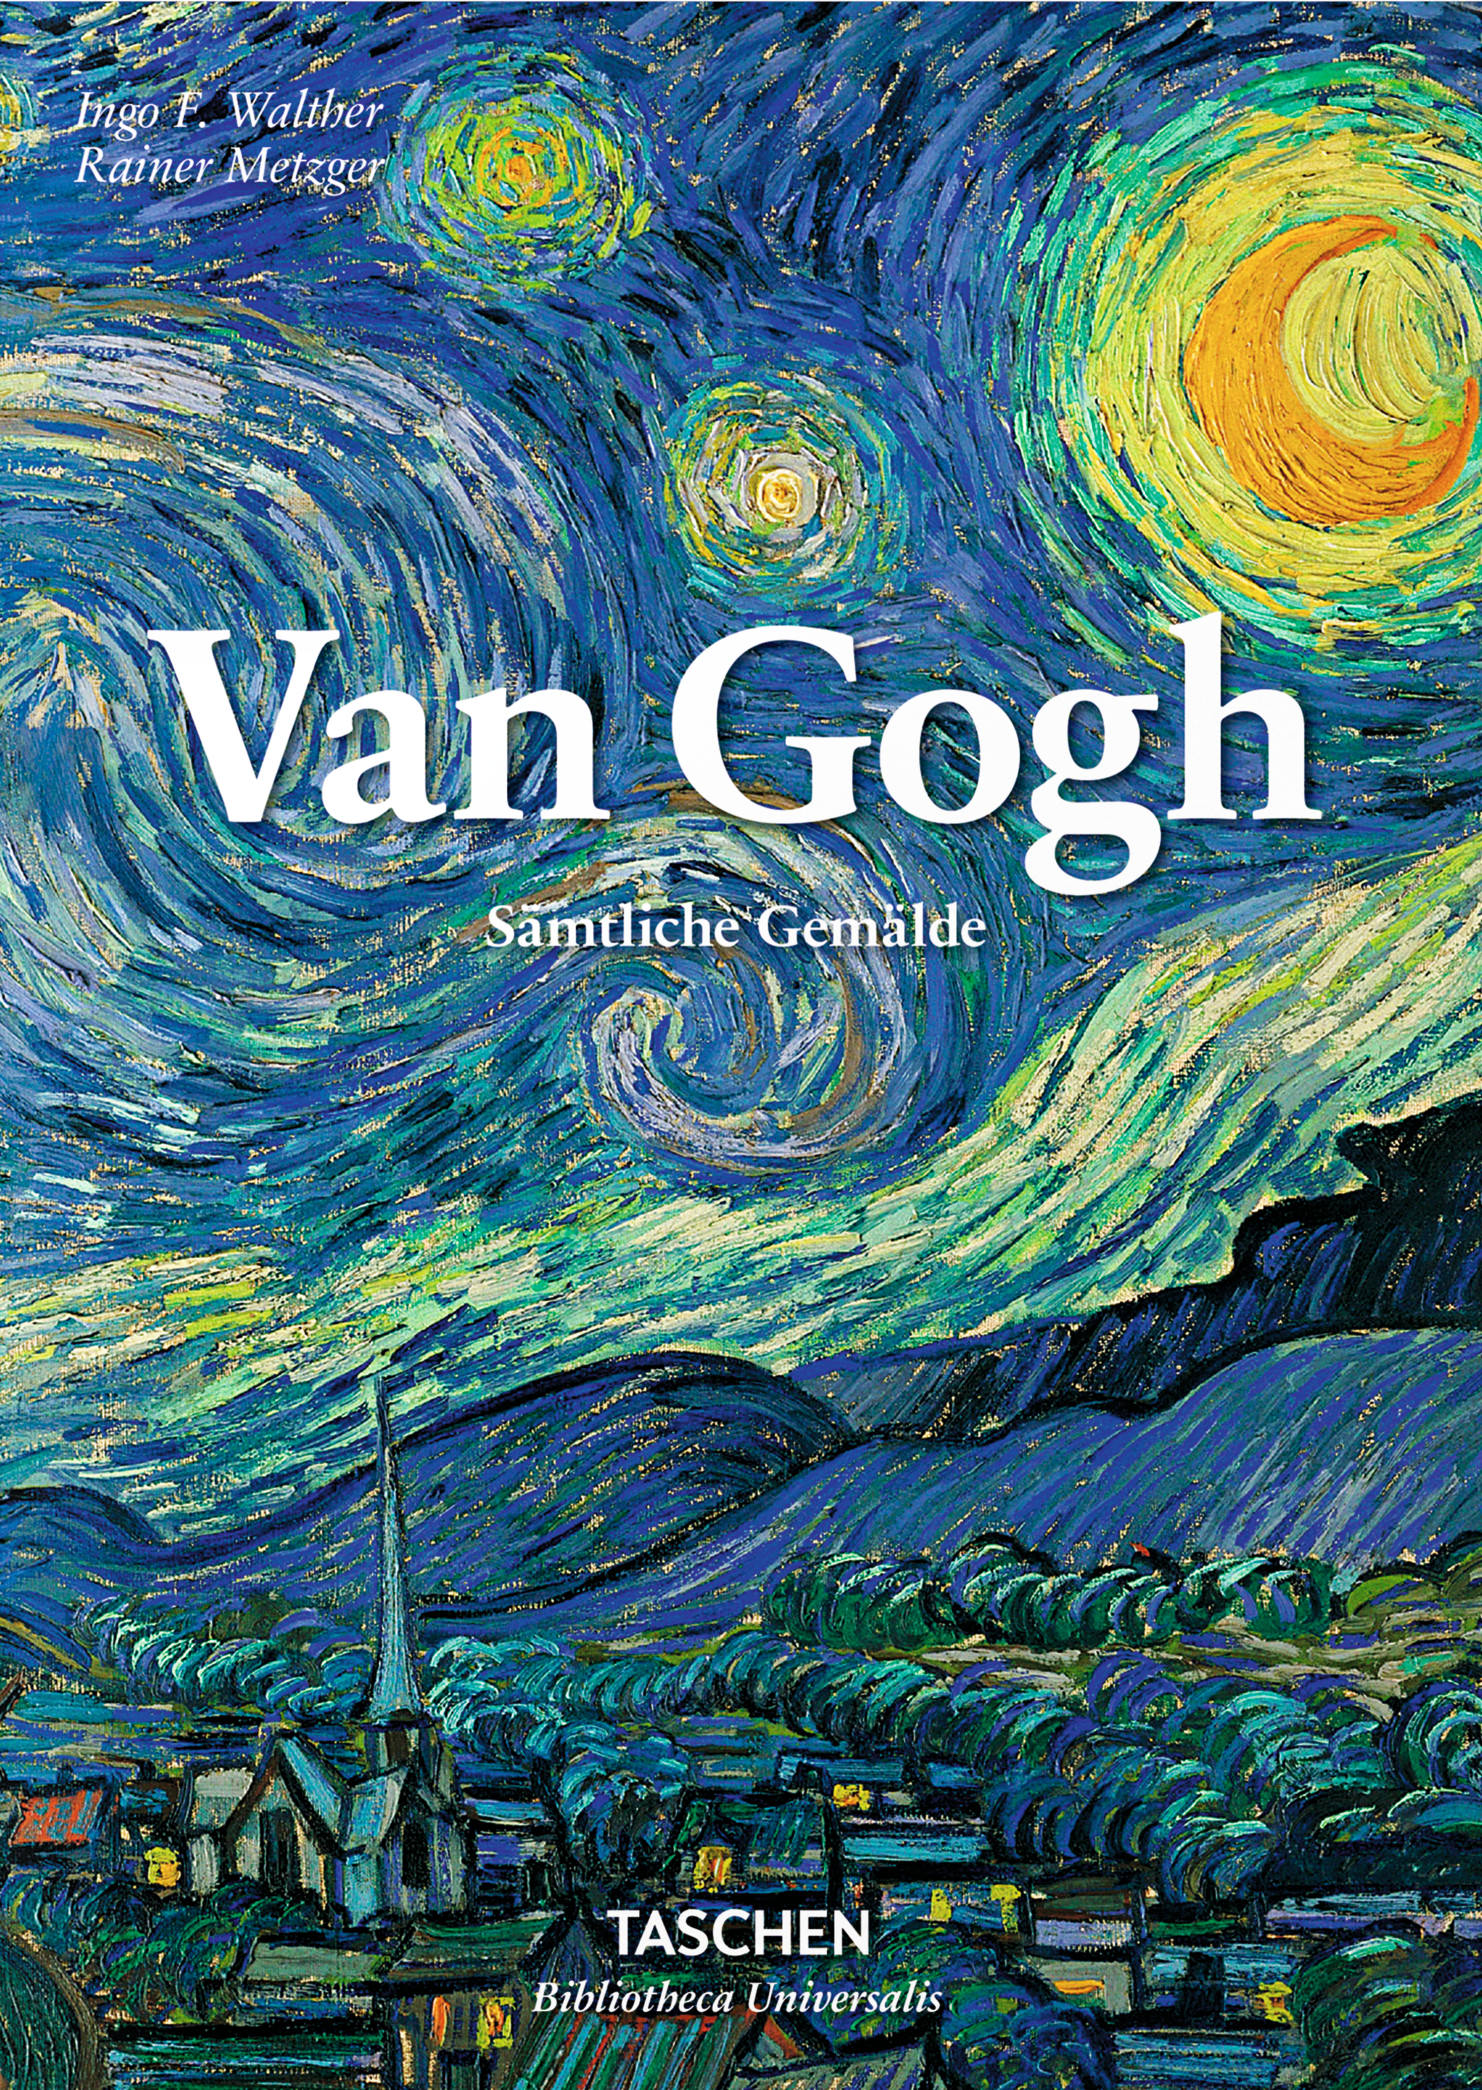 Ingo F. Walther & Rainer Metzger: Vincent van Gogh